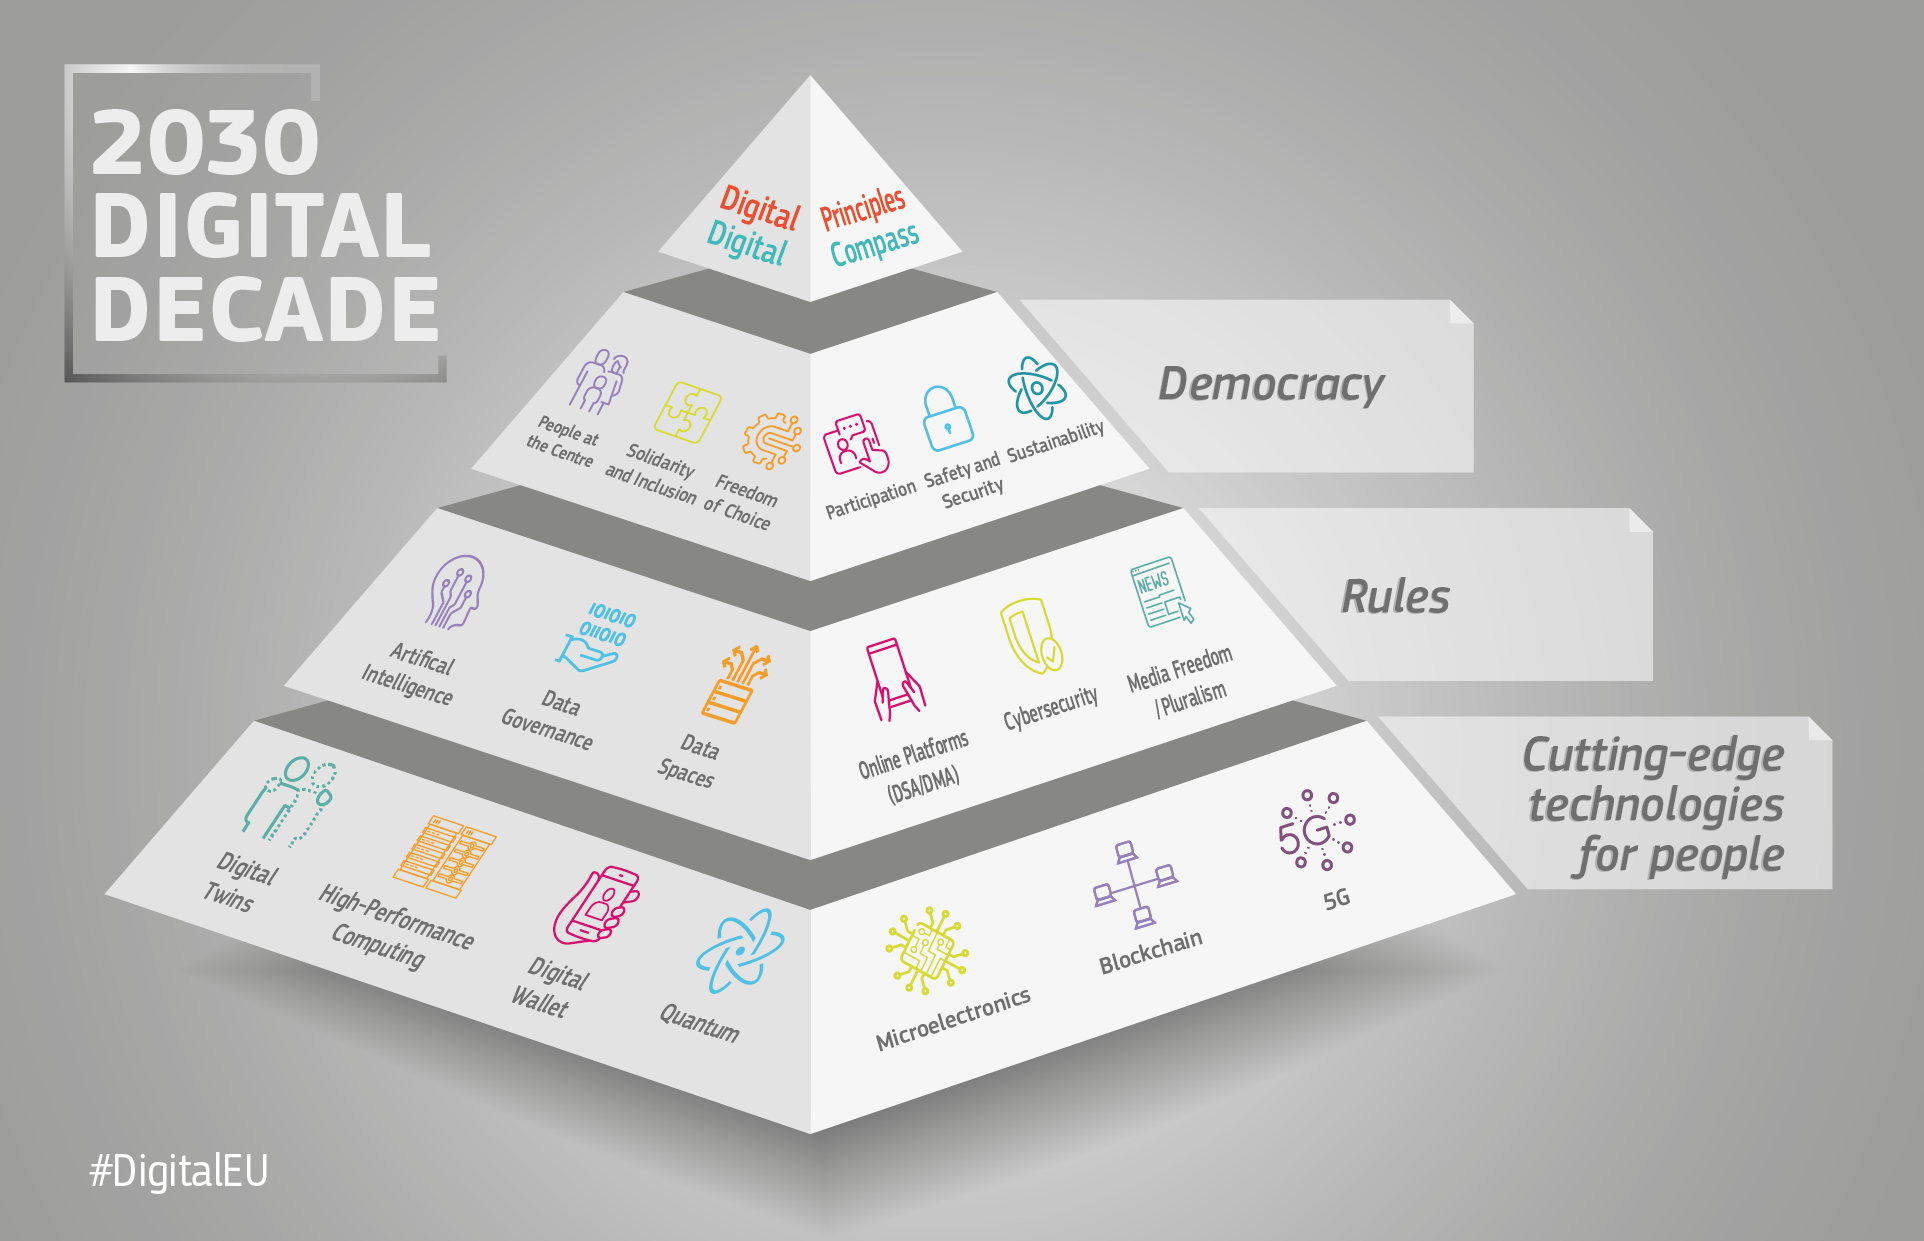 pyramida znázorňující propojení politik a iniciativ digitálního desetiletí